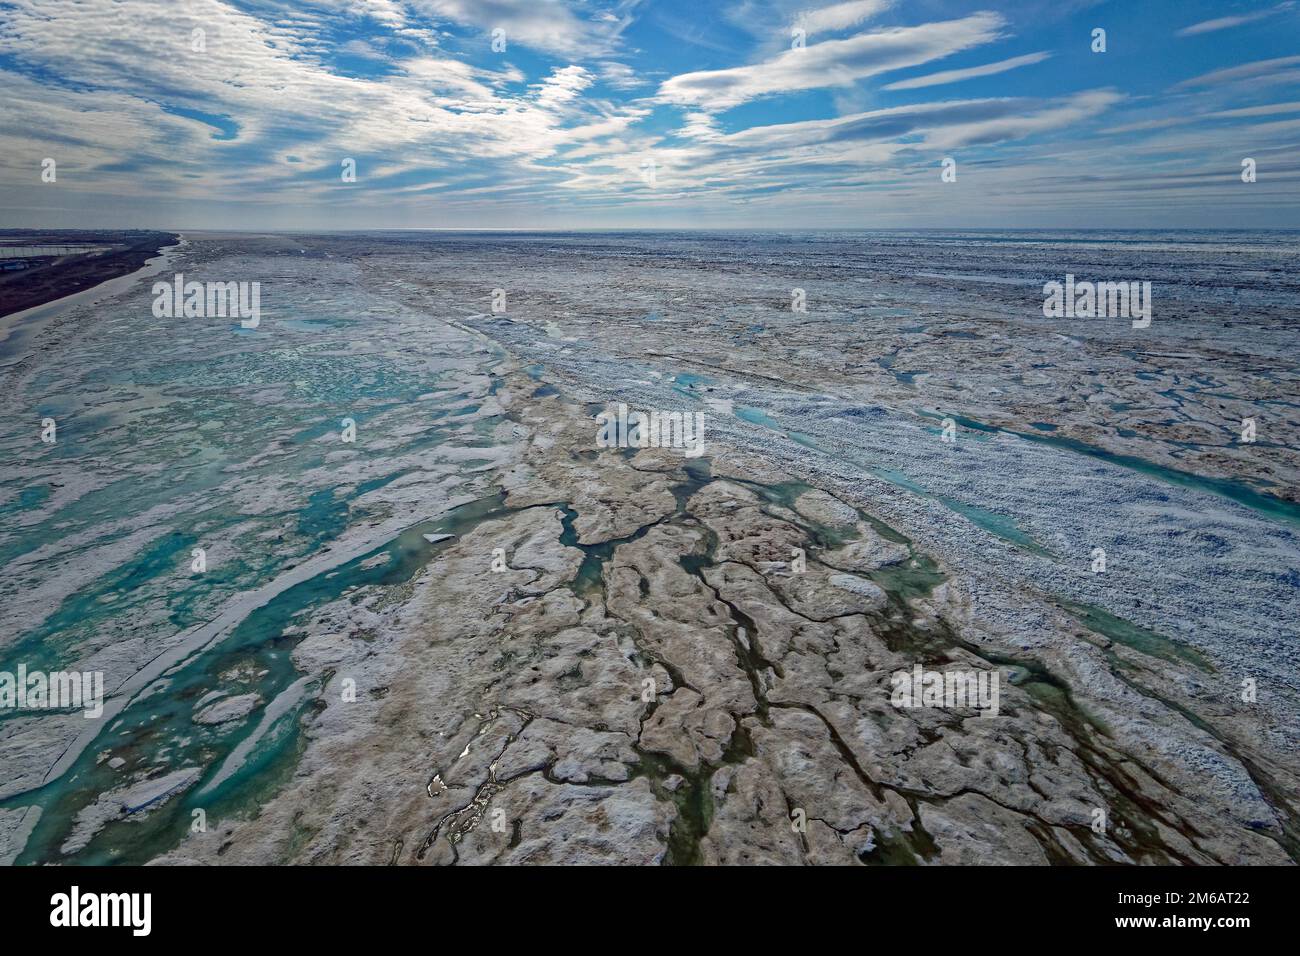 Images de drones, côte glacée, déglaçage, brouille, océan Arctique, Mer de Chukchi, Arctique, nord de l'Alaska, États-Unis Banque D'Images